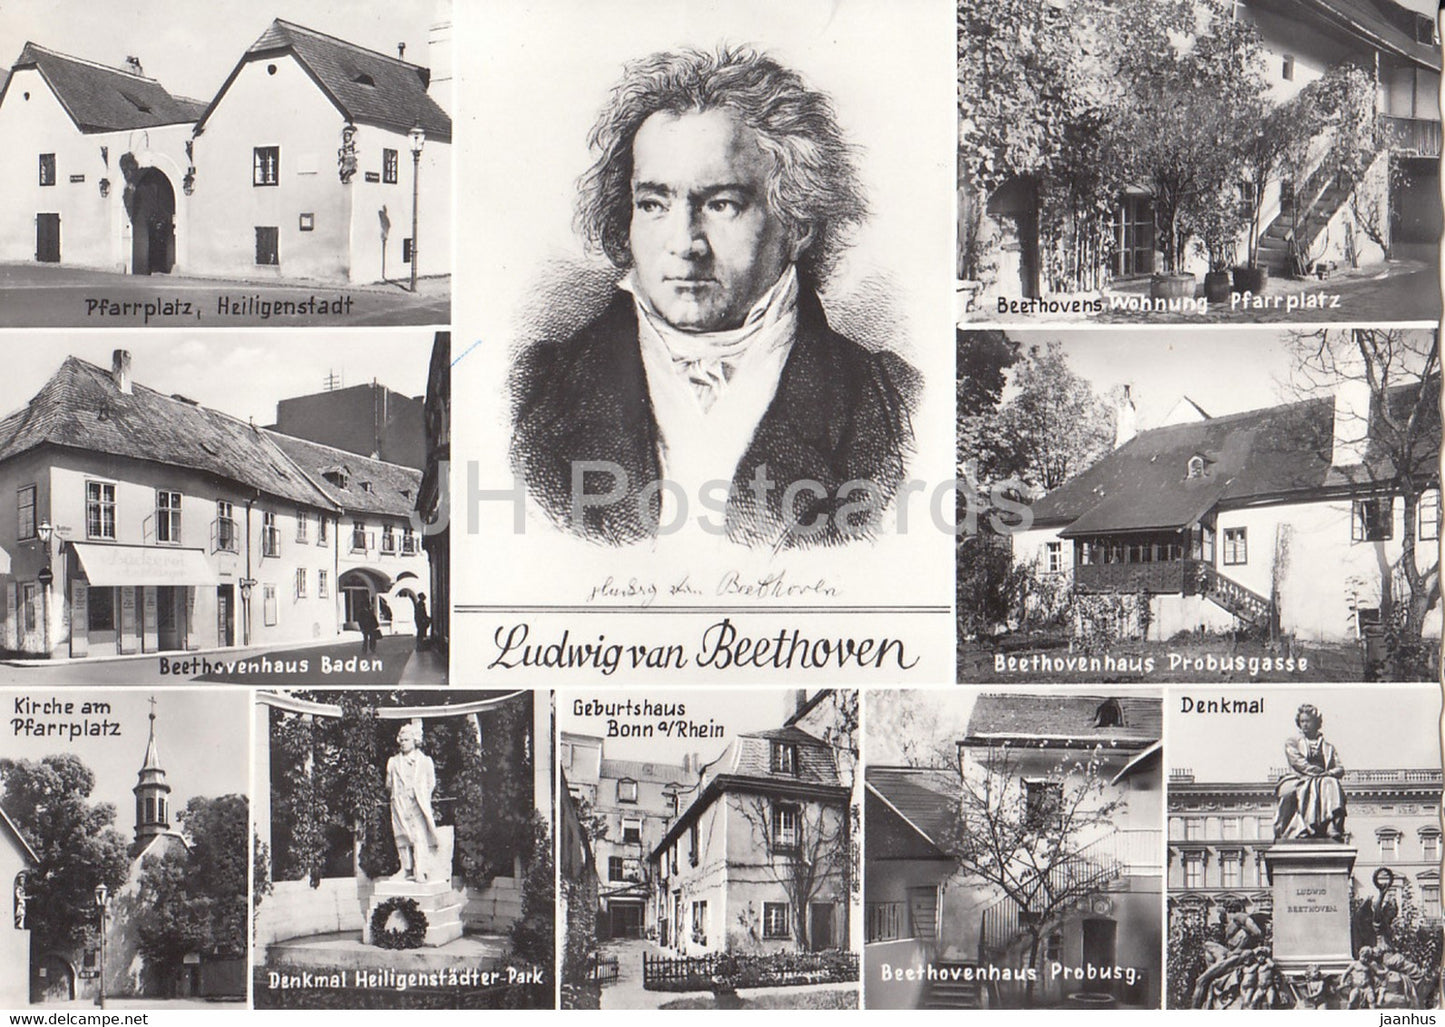 Ludwig van Beethoven - Pfarrplatz Heiligenstadt - Beethovenhaus Baden - composer - multiview - 46114 - Austria - unused - JH Postcards